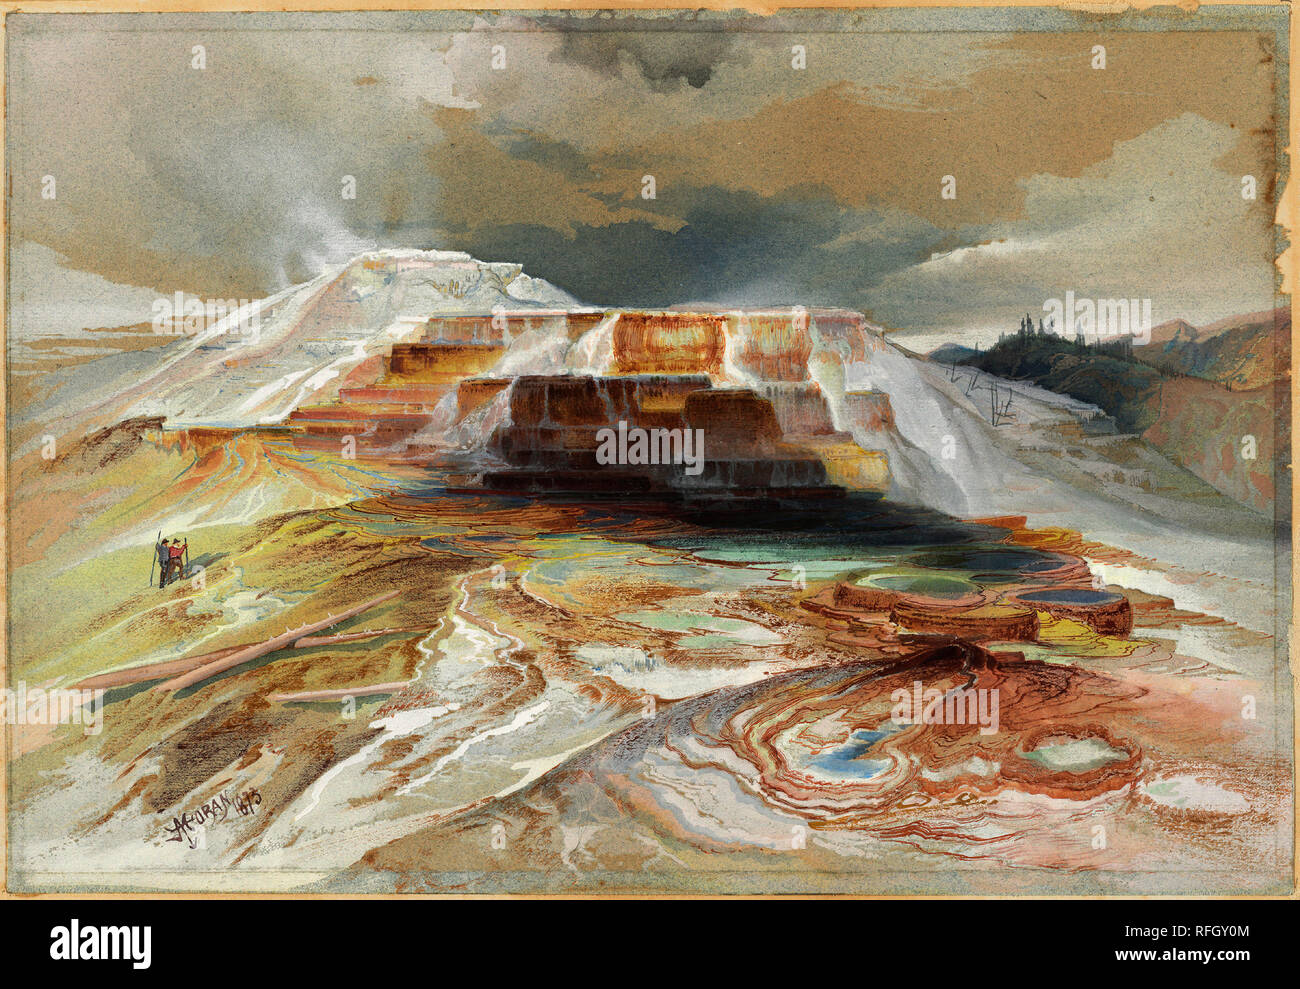 Sorgenti calde di Gardiner il fiume Yellowstone. Data: 1873. Dimensioni: IMMAGINE: 25,1 × 36,3 cm (9 7/8 × 14 5/16 in.). montaggio: 37,8 × 49,6 cm (14 7/8 × 19 1/2 in.). Medium: acquerello e gouache su Grafite su carta blu. Museo: National Gallery of Art di Washington DC. Autore: Thomas Moran. Foto Stock